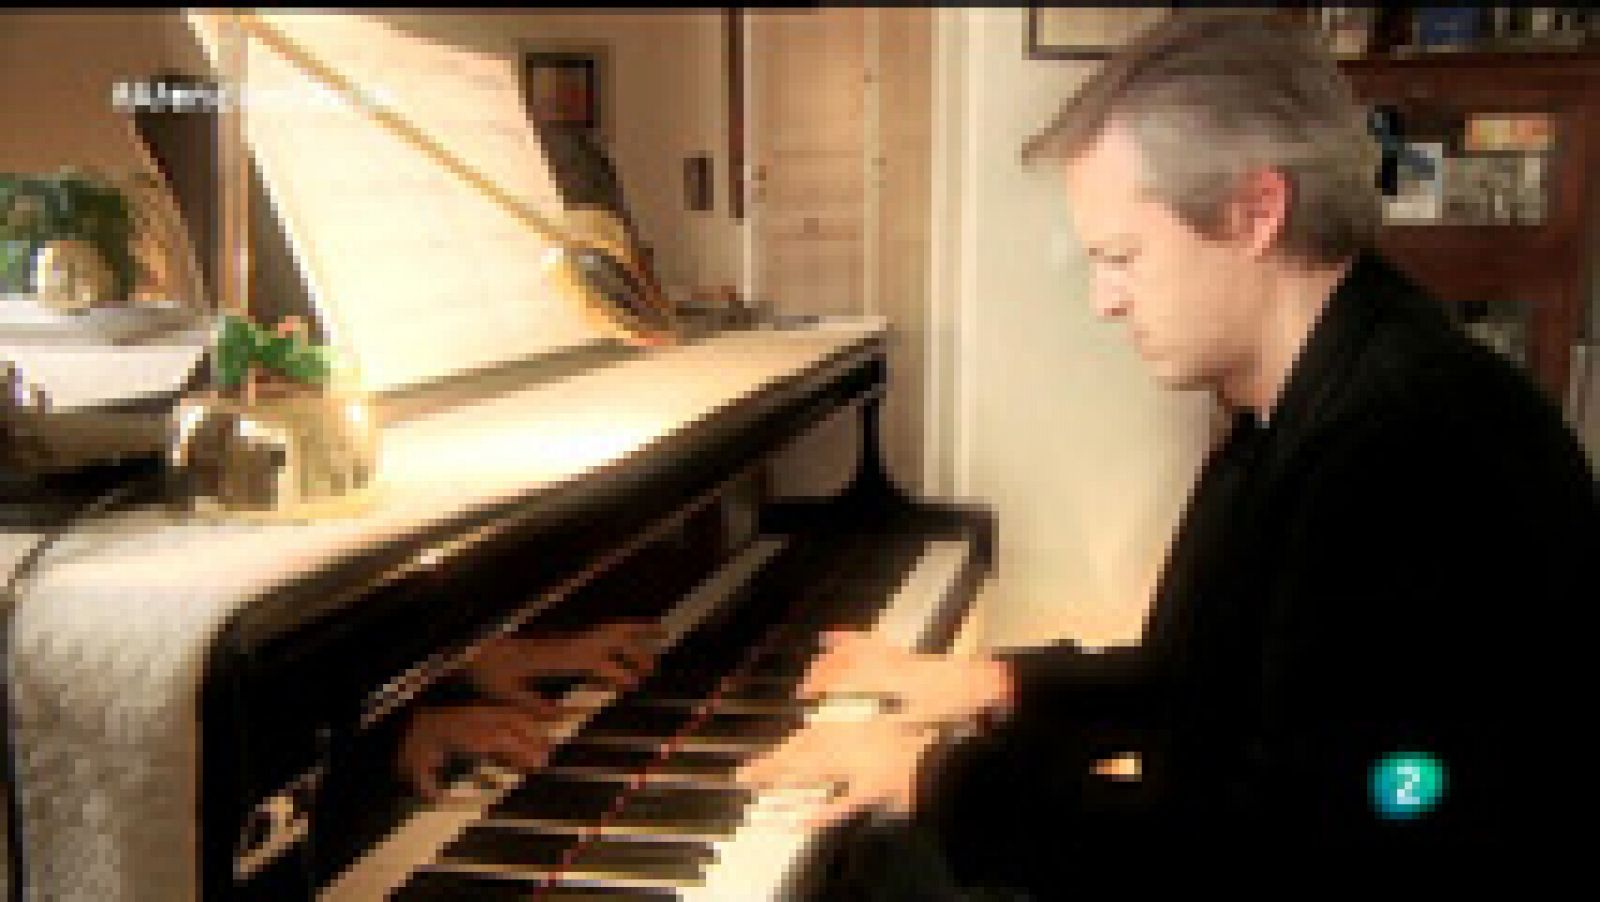 Atención obras -  El piano de Manuel de Falla